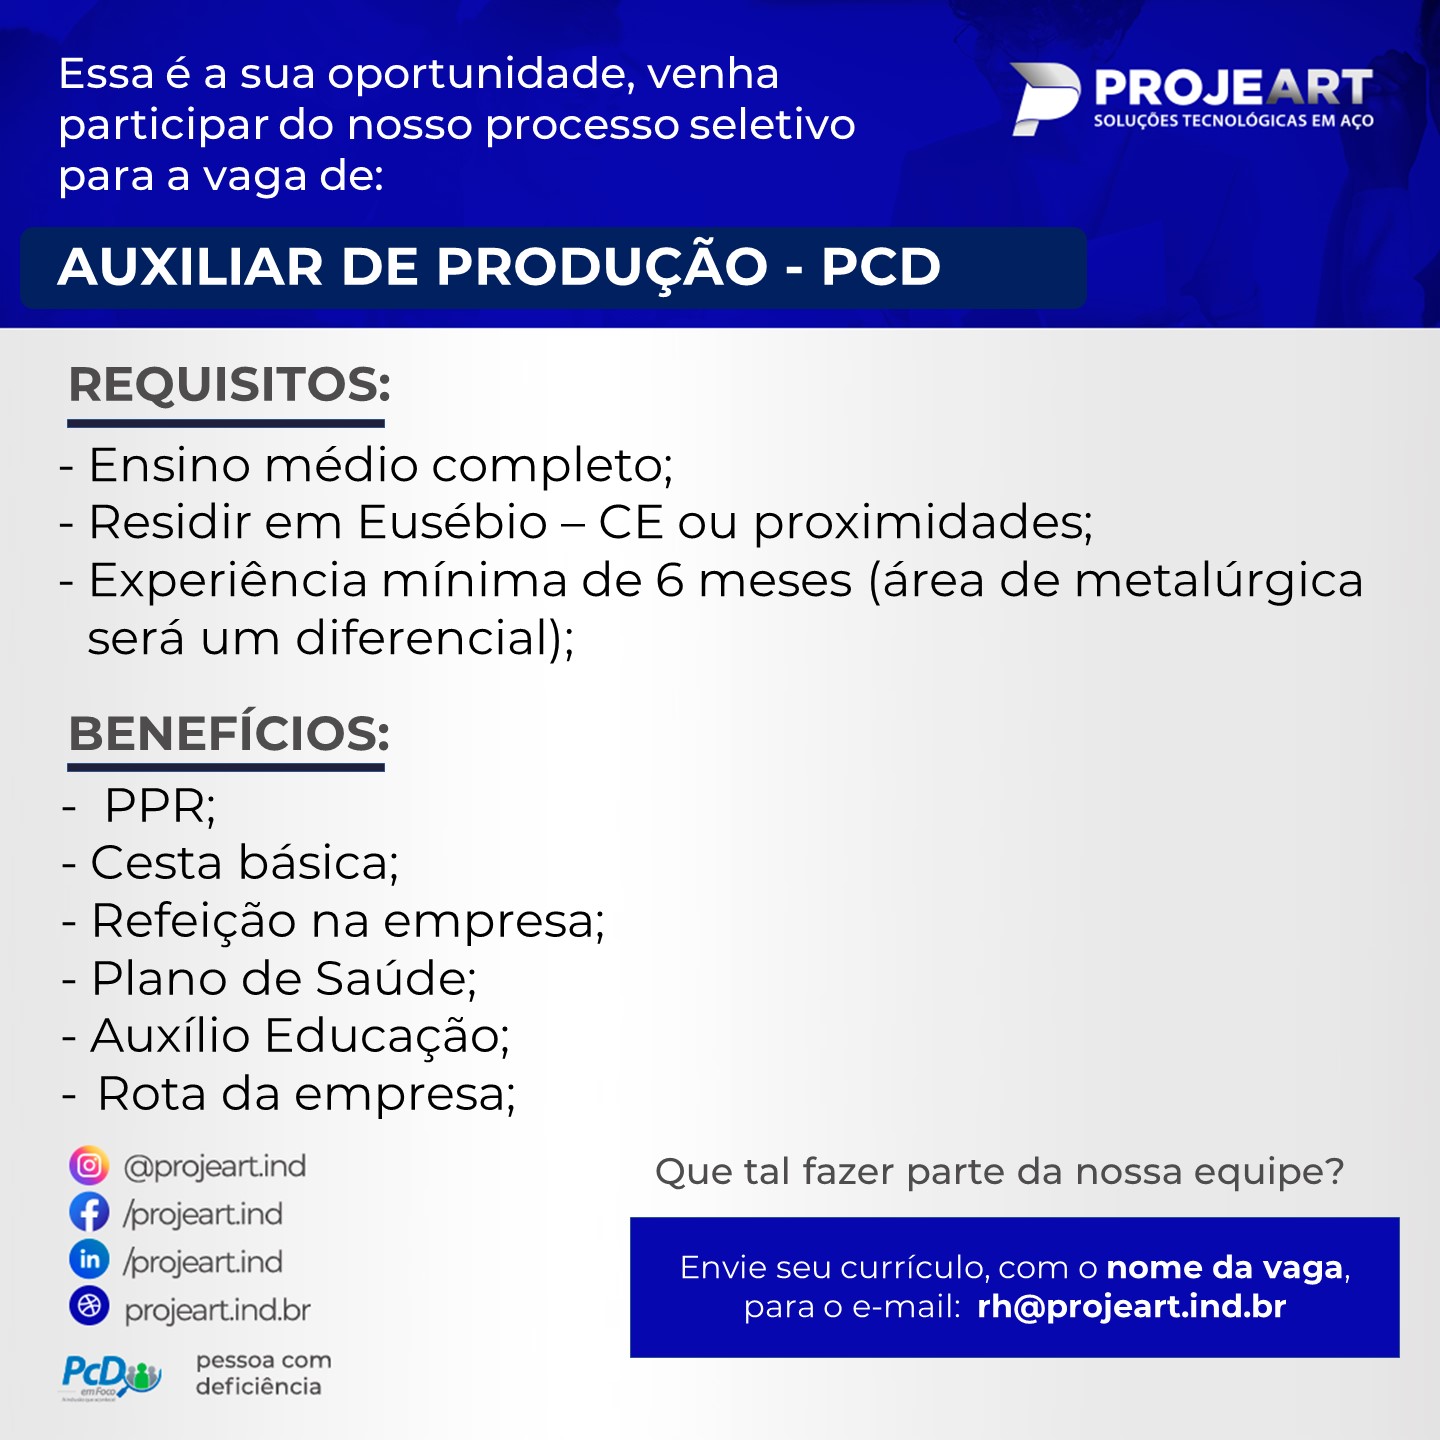 AUXILIAR DE PRODUÇÃO - PCD